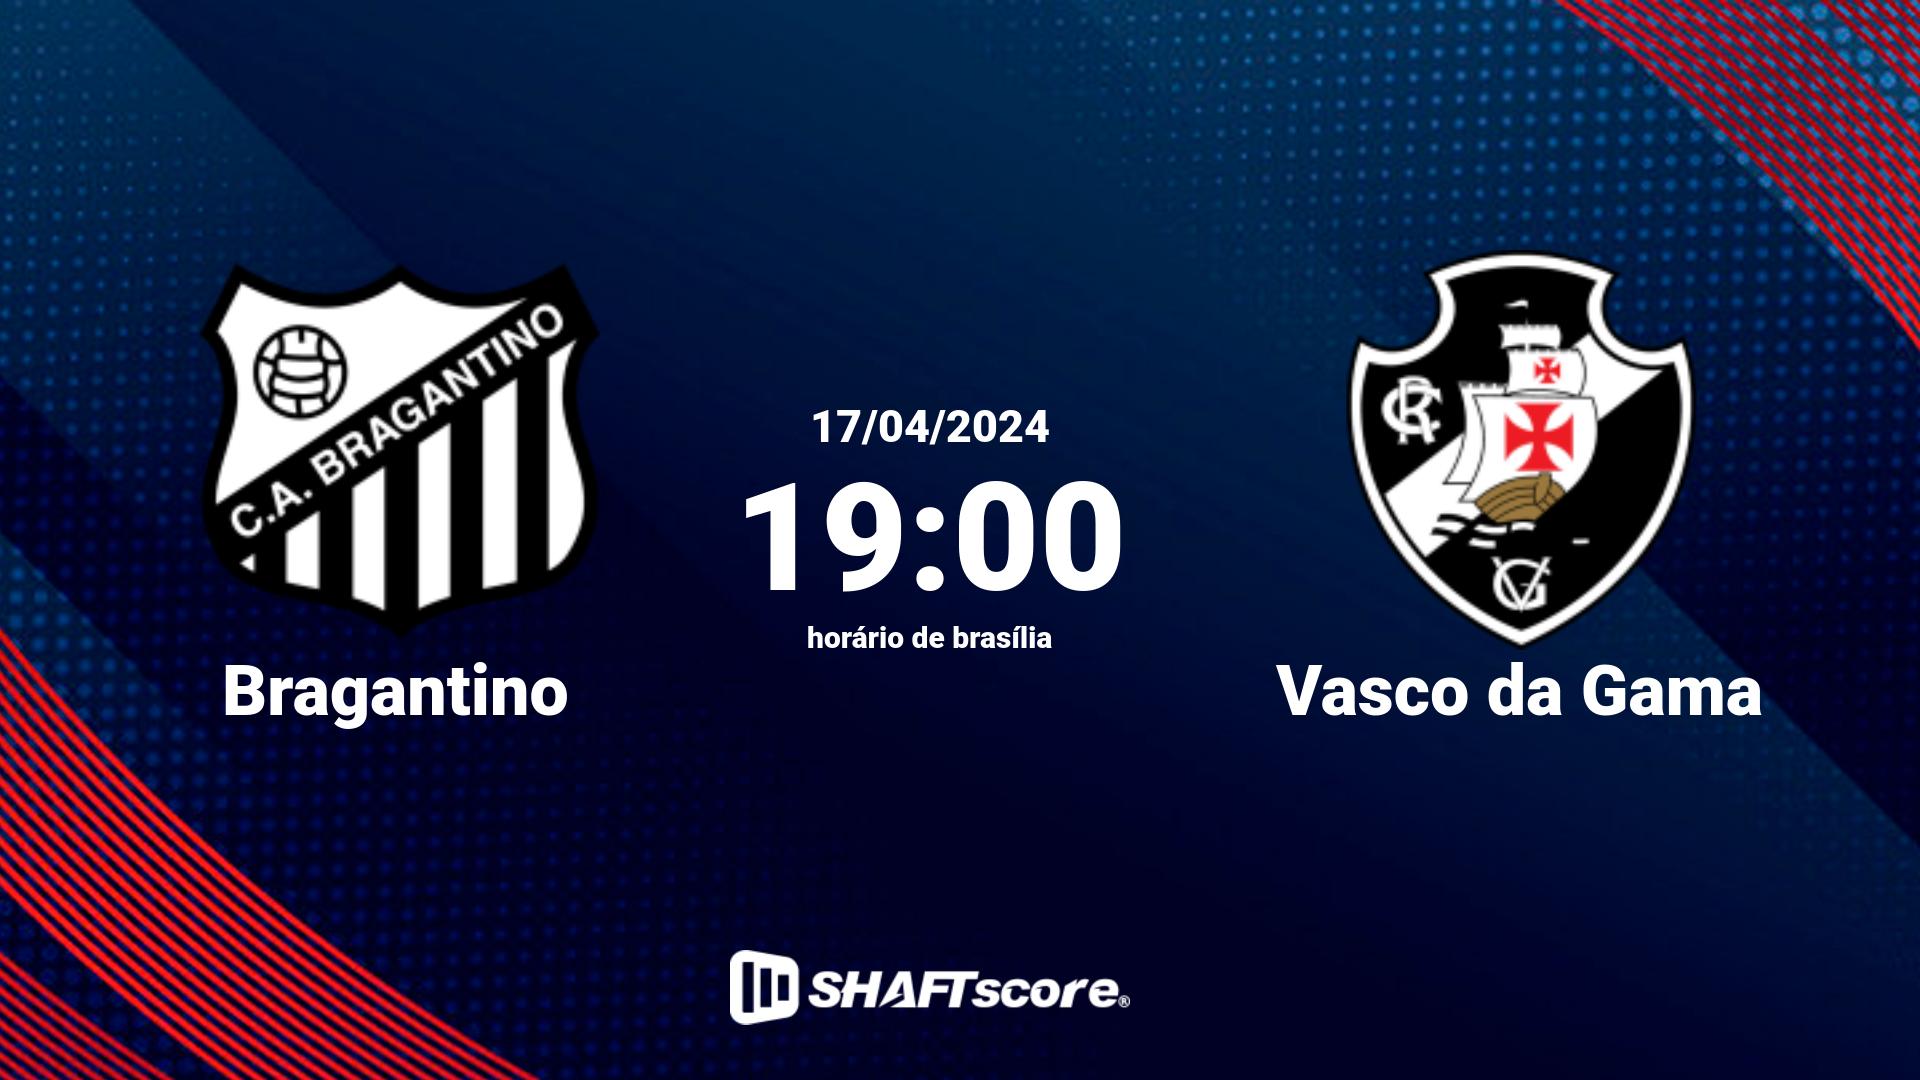 Estatísticas do jogo Bragantino vs Vasco da Gama 17.04 19:00